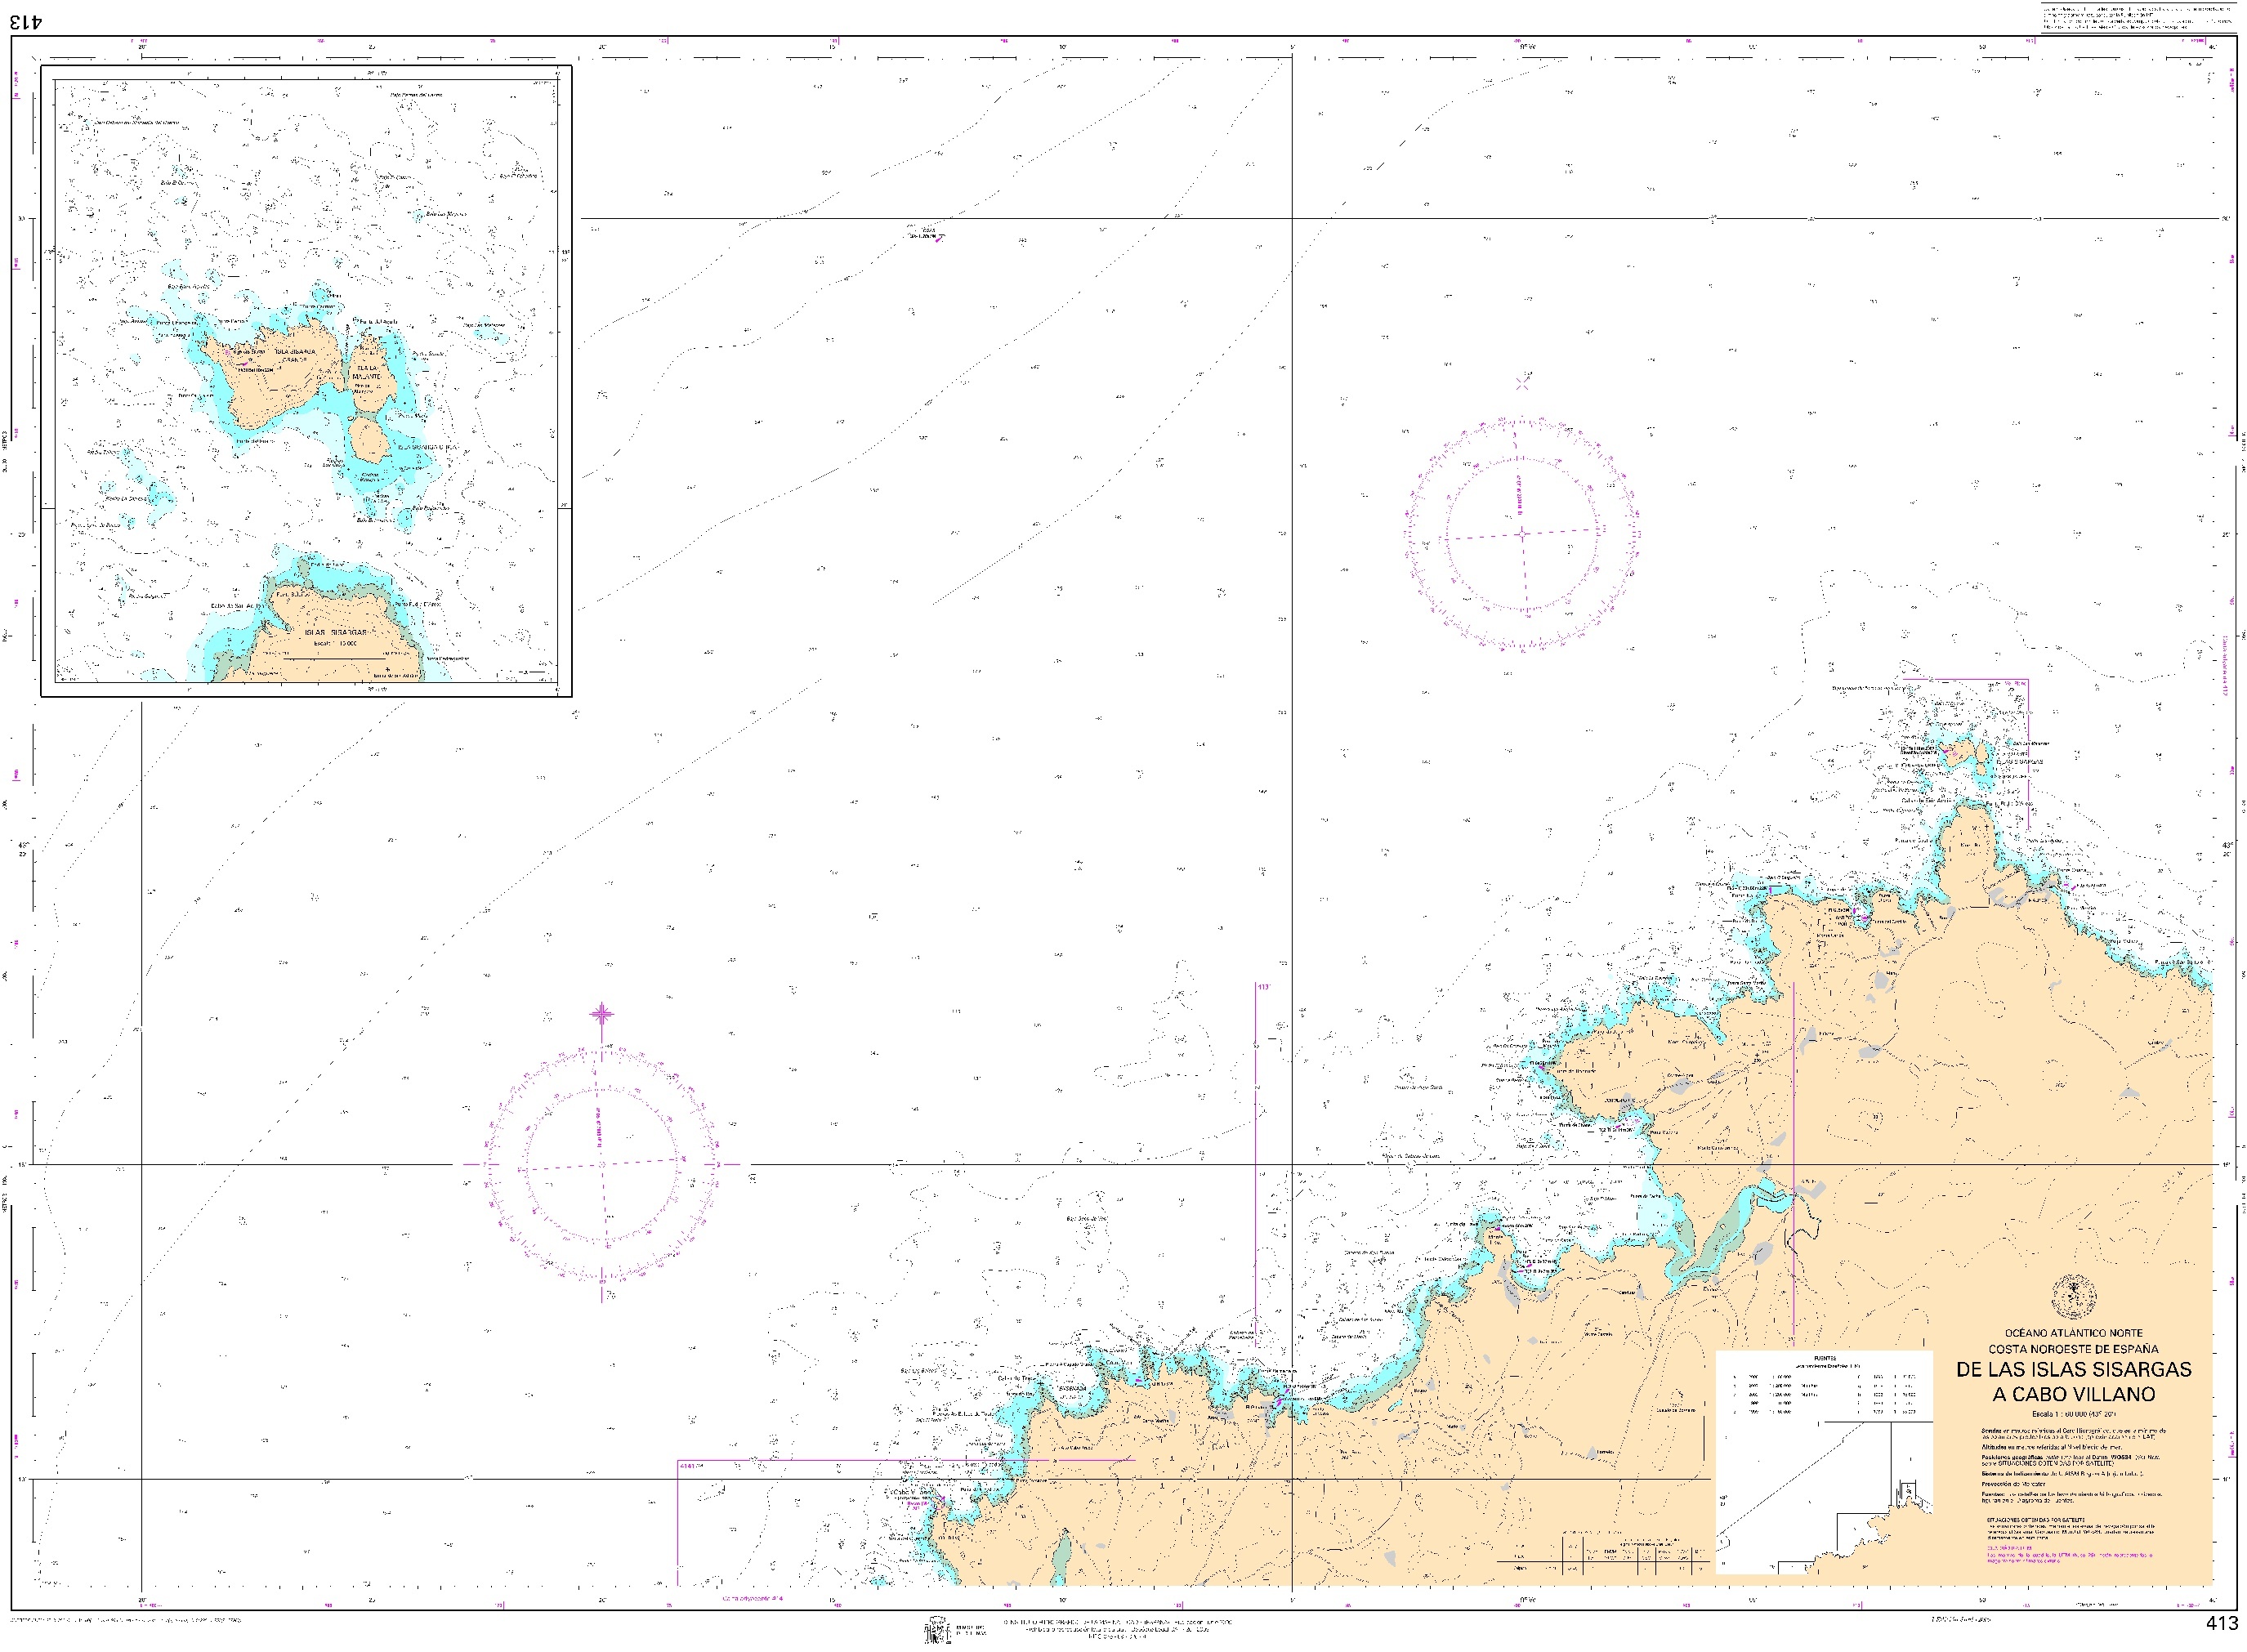 413 De las islas Sisargas a cabo Villano (plano inserto: Islas Sisargas) "1:60000. 1:60000. 1:60000"